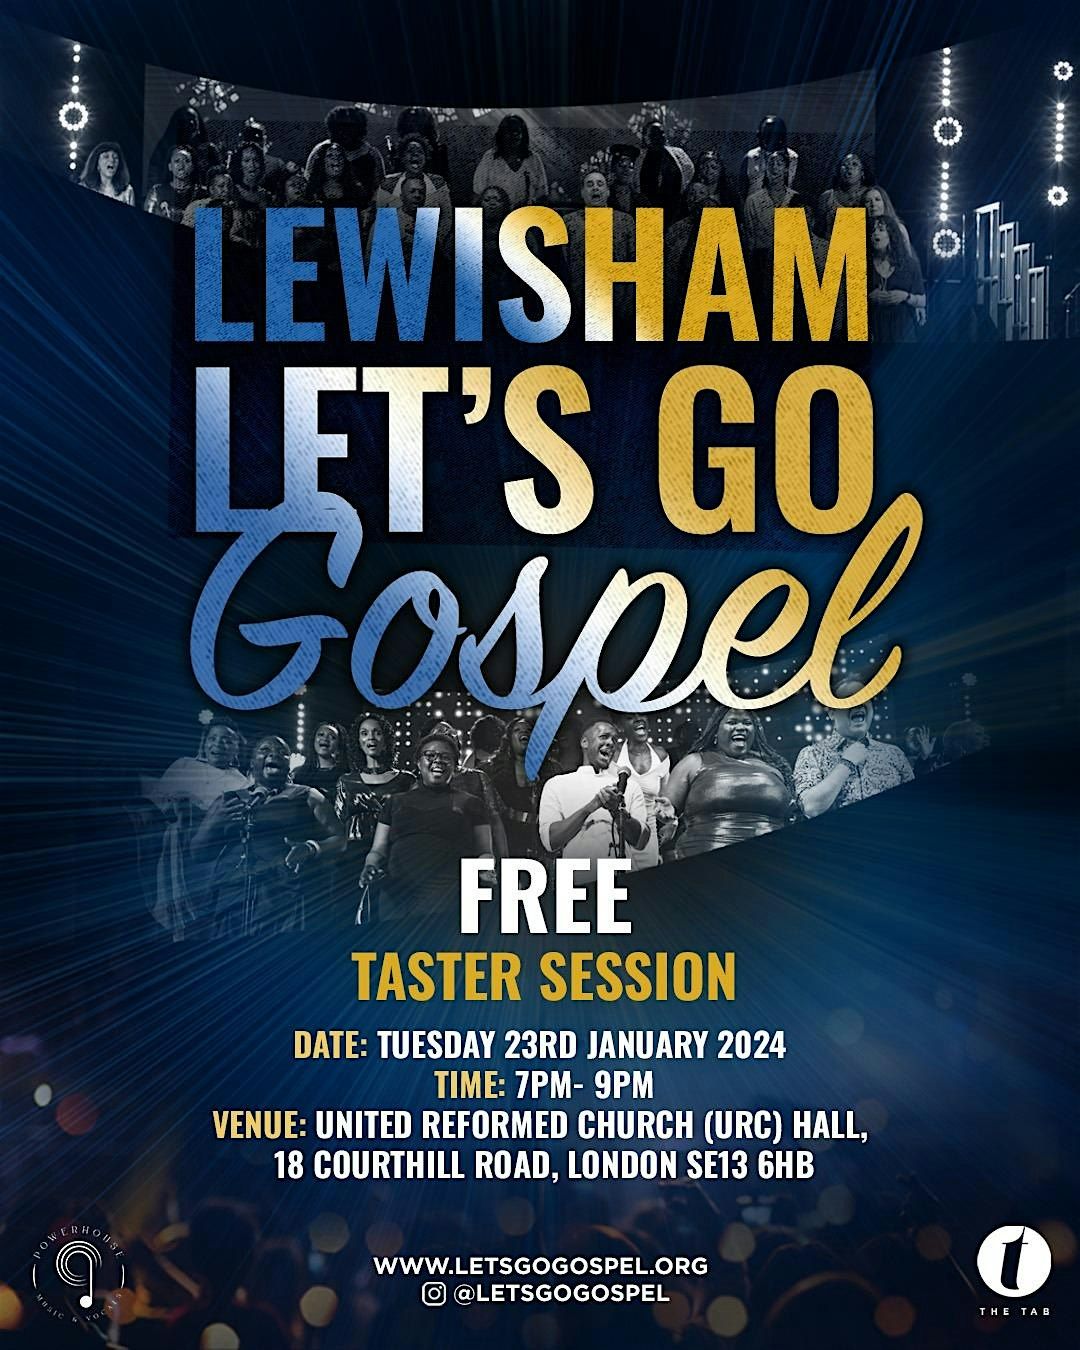 LEWISHAM Let's Go Gospel Choir FREE TASTER session